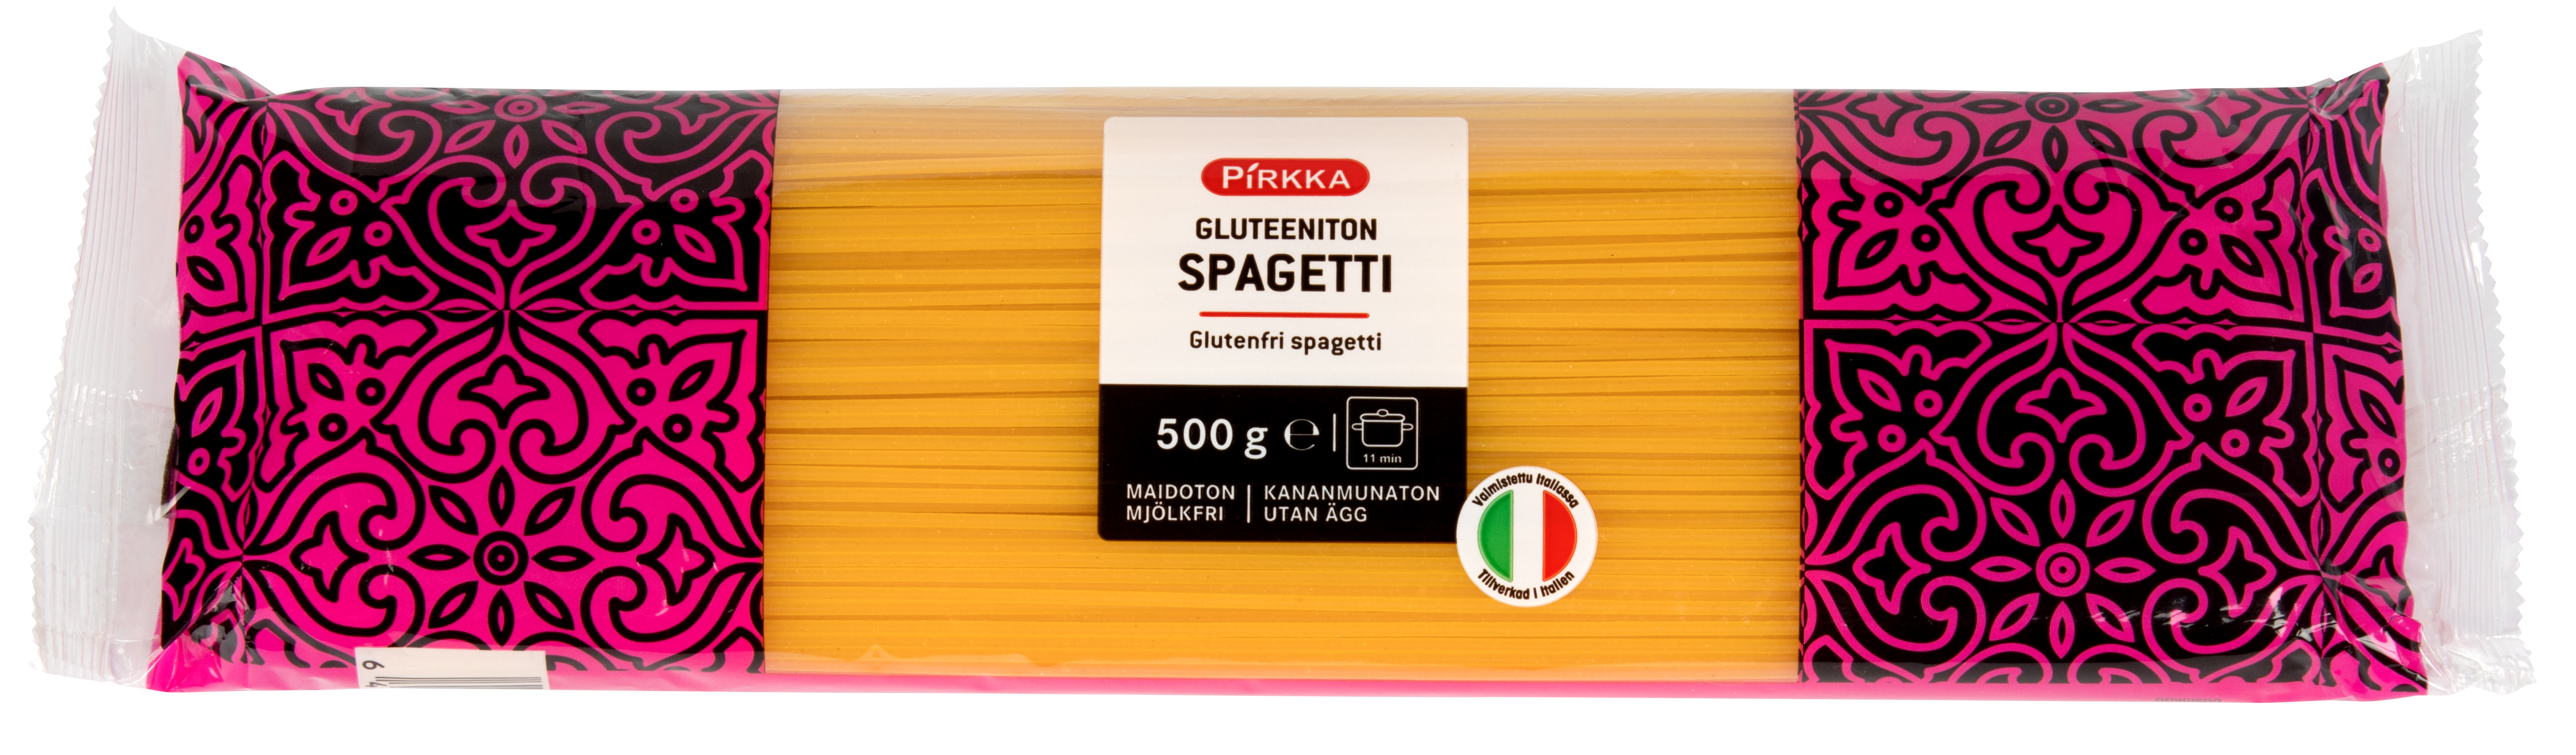 Pirkka gluteeniton spagetti 500g | K-Ruoka Verkkokauppa